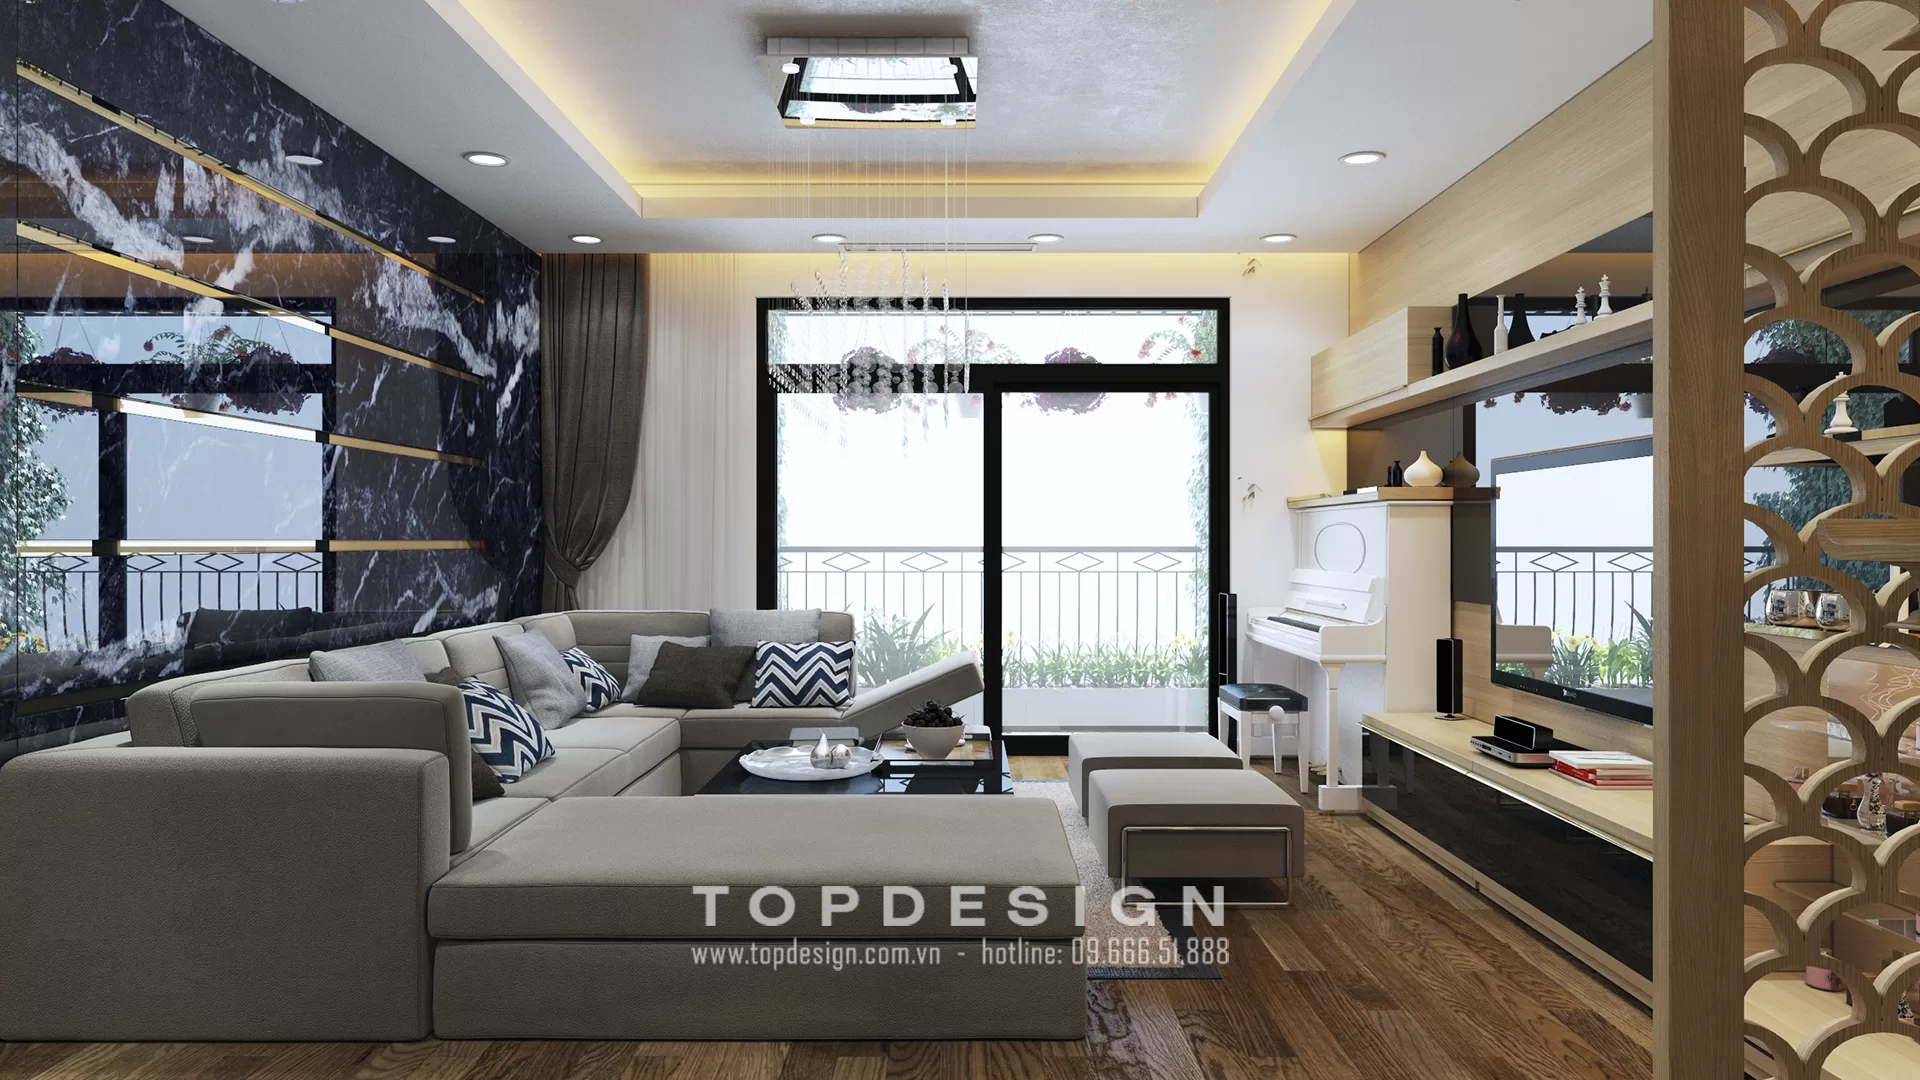 Giá thiết kế nội thất chung cư cao cấp - TOPDESIGN - 2